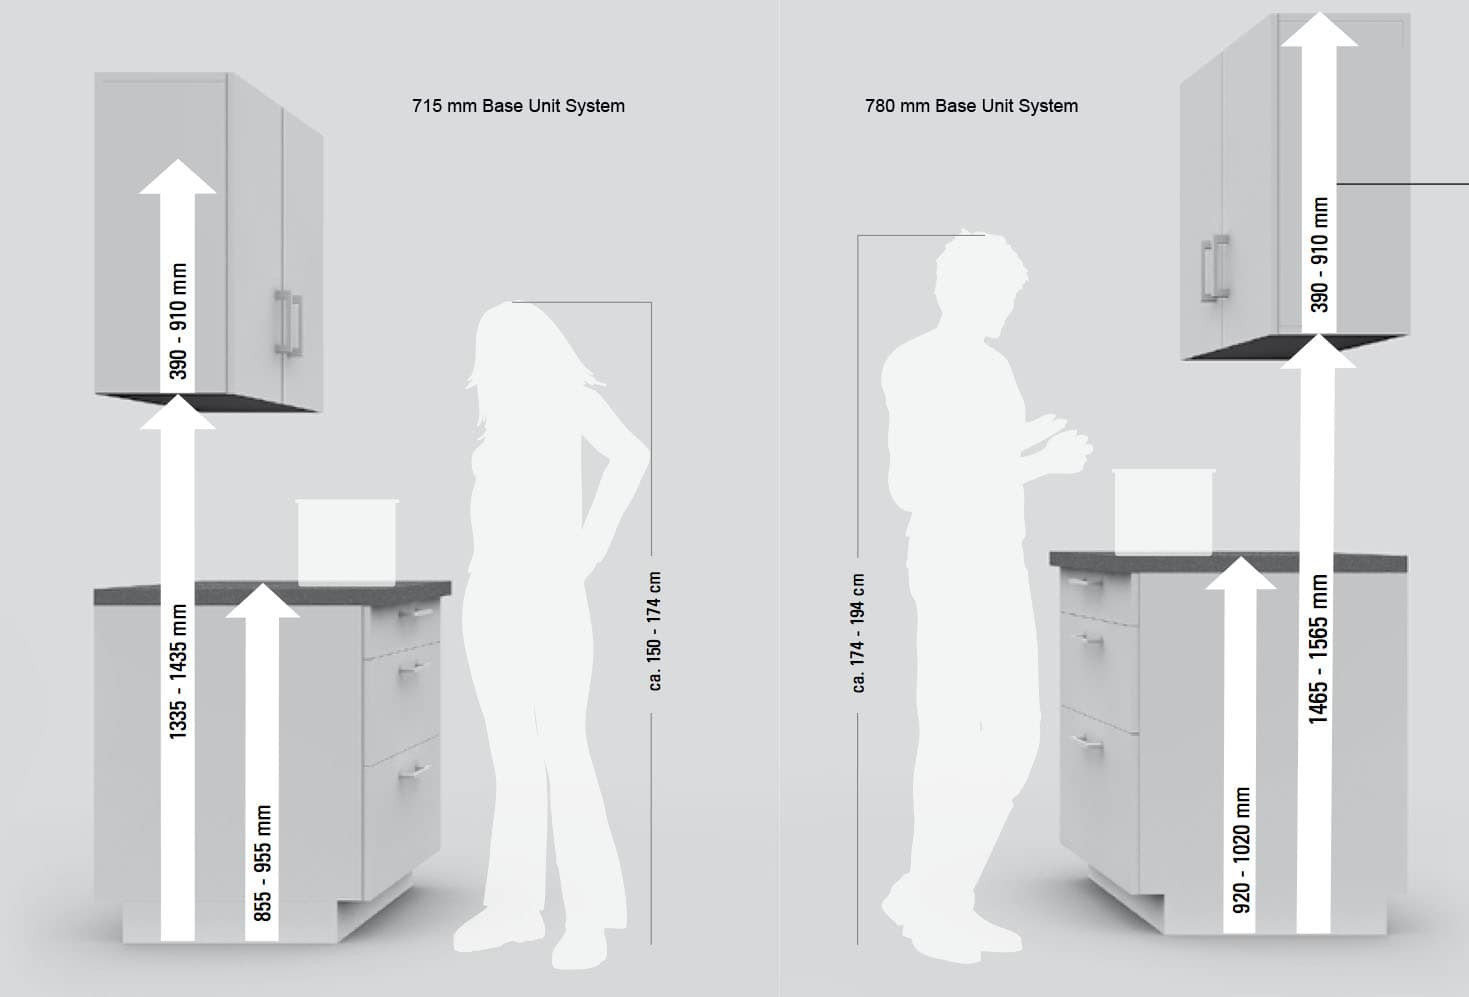 Kitchen Cabinet Heights
 Standard Kitchen Cabinet Height Design – Loccie Better